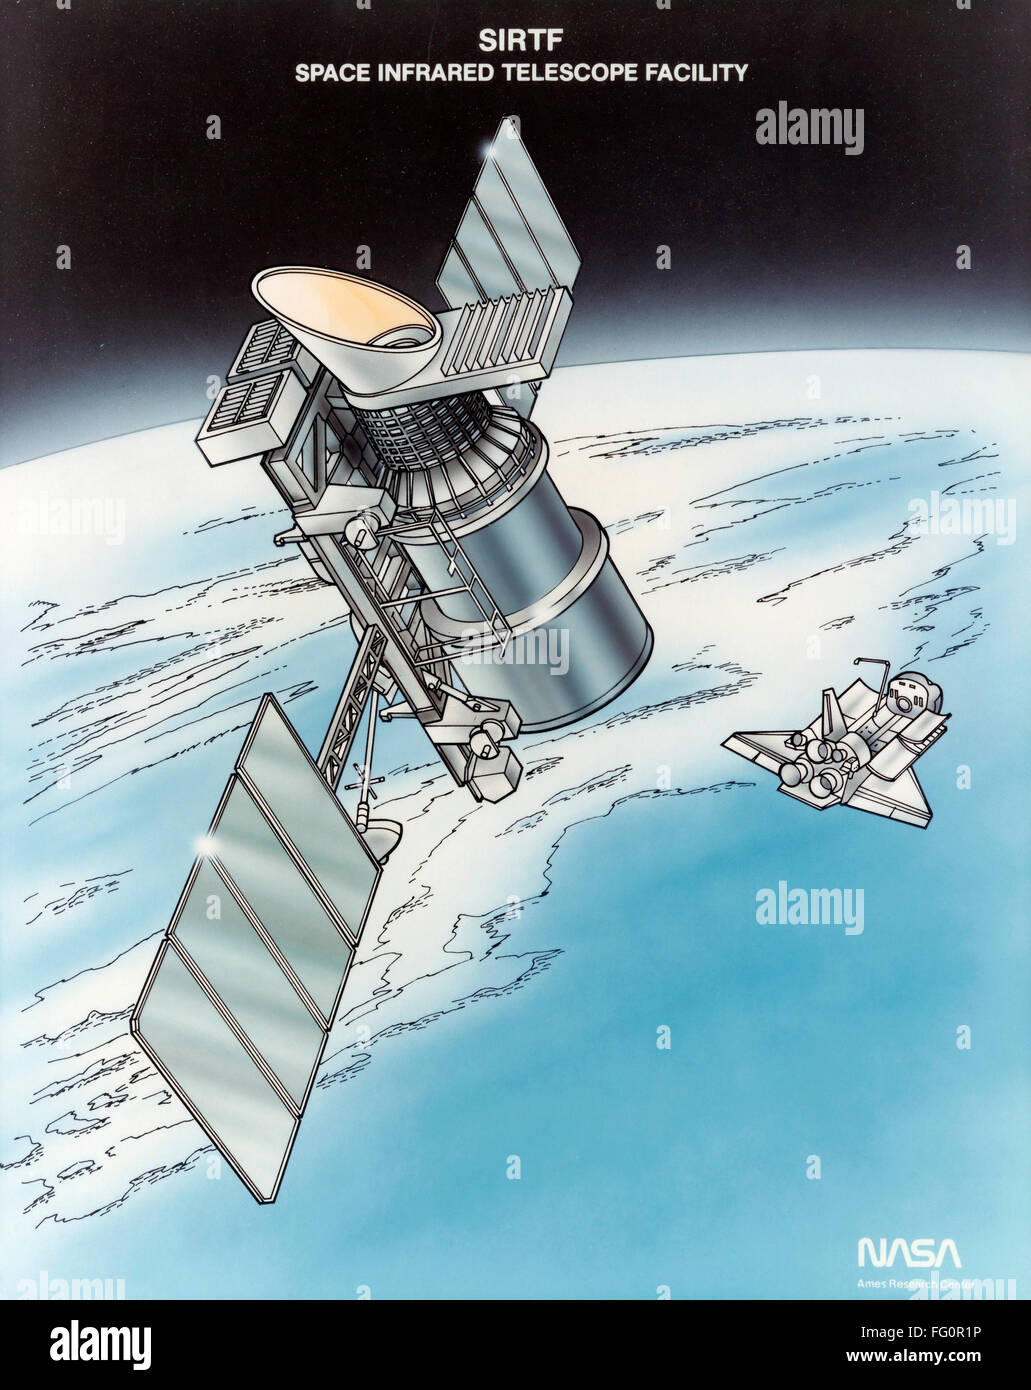 Telescopio spaziale Spitzer. /Nil telescopio spaziale Spitzer, precedentemente noto come lo spazio telescopio ad infrarossi Facility, un Infrared Space Observatory in orbita attorno al Sole, lanciato da una navetta spaziale nel 2003. Illustrazione, c2003. Foto Stock